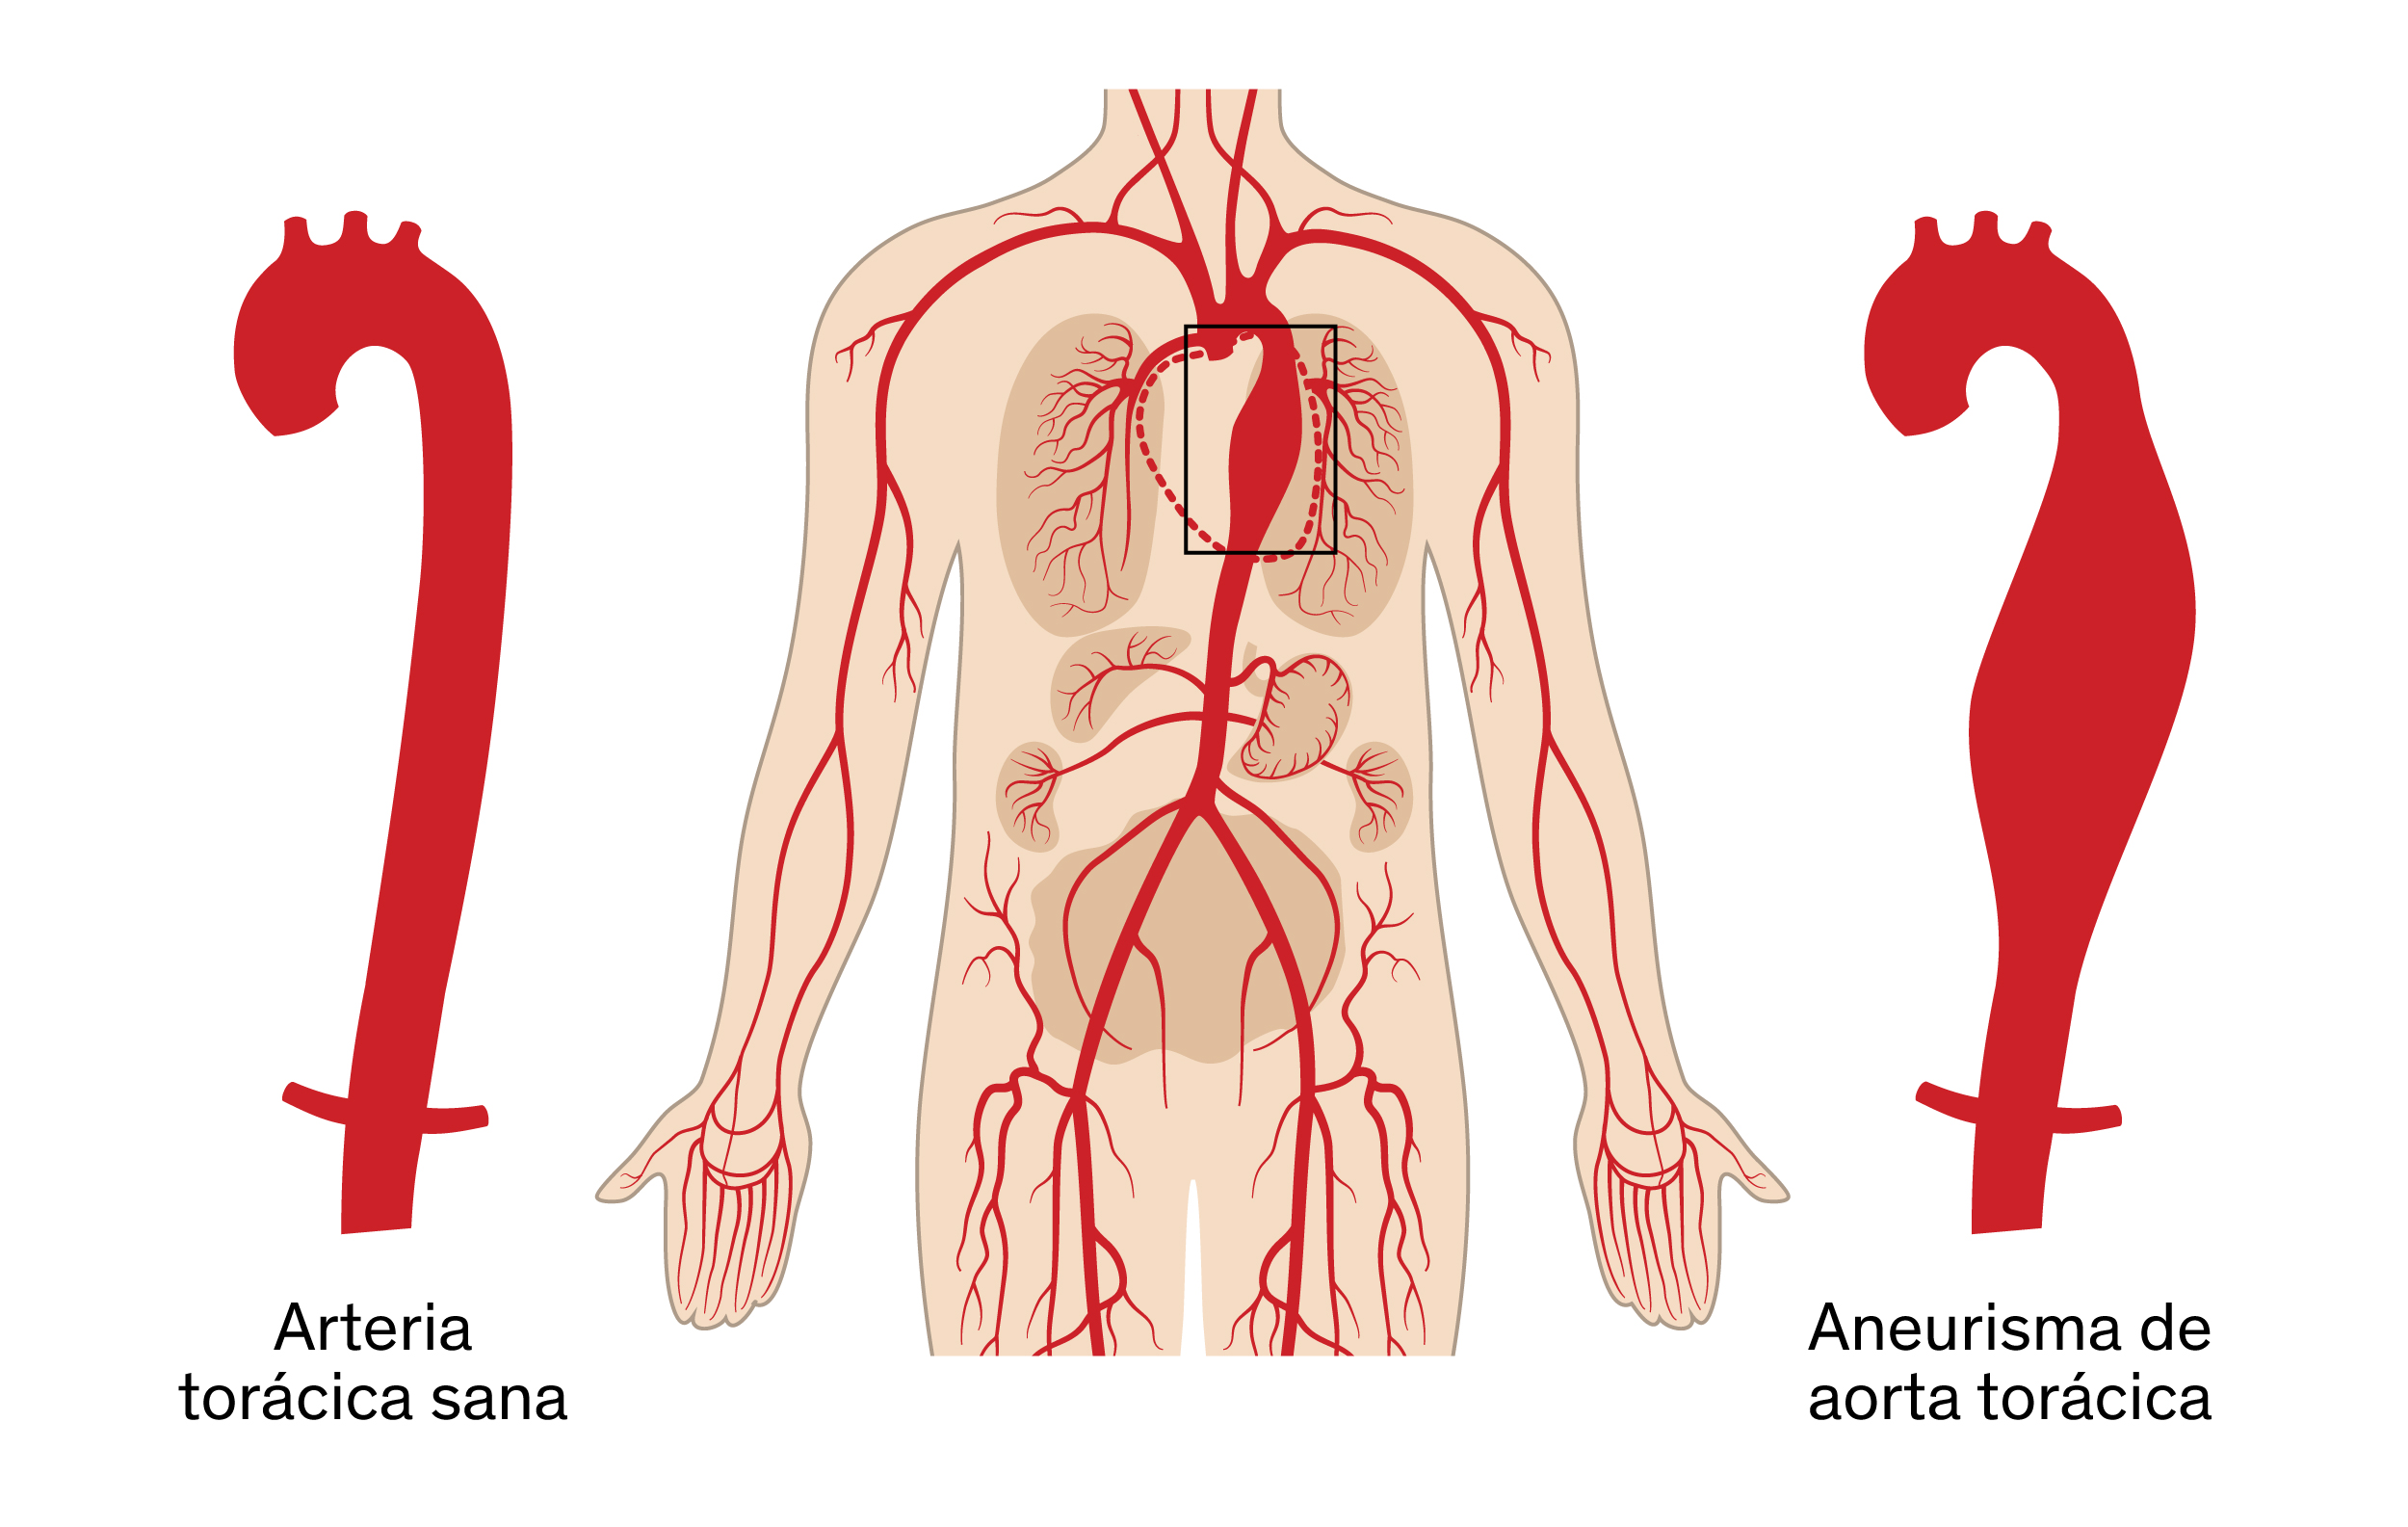 Aneurismas de aorta torácica